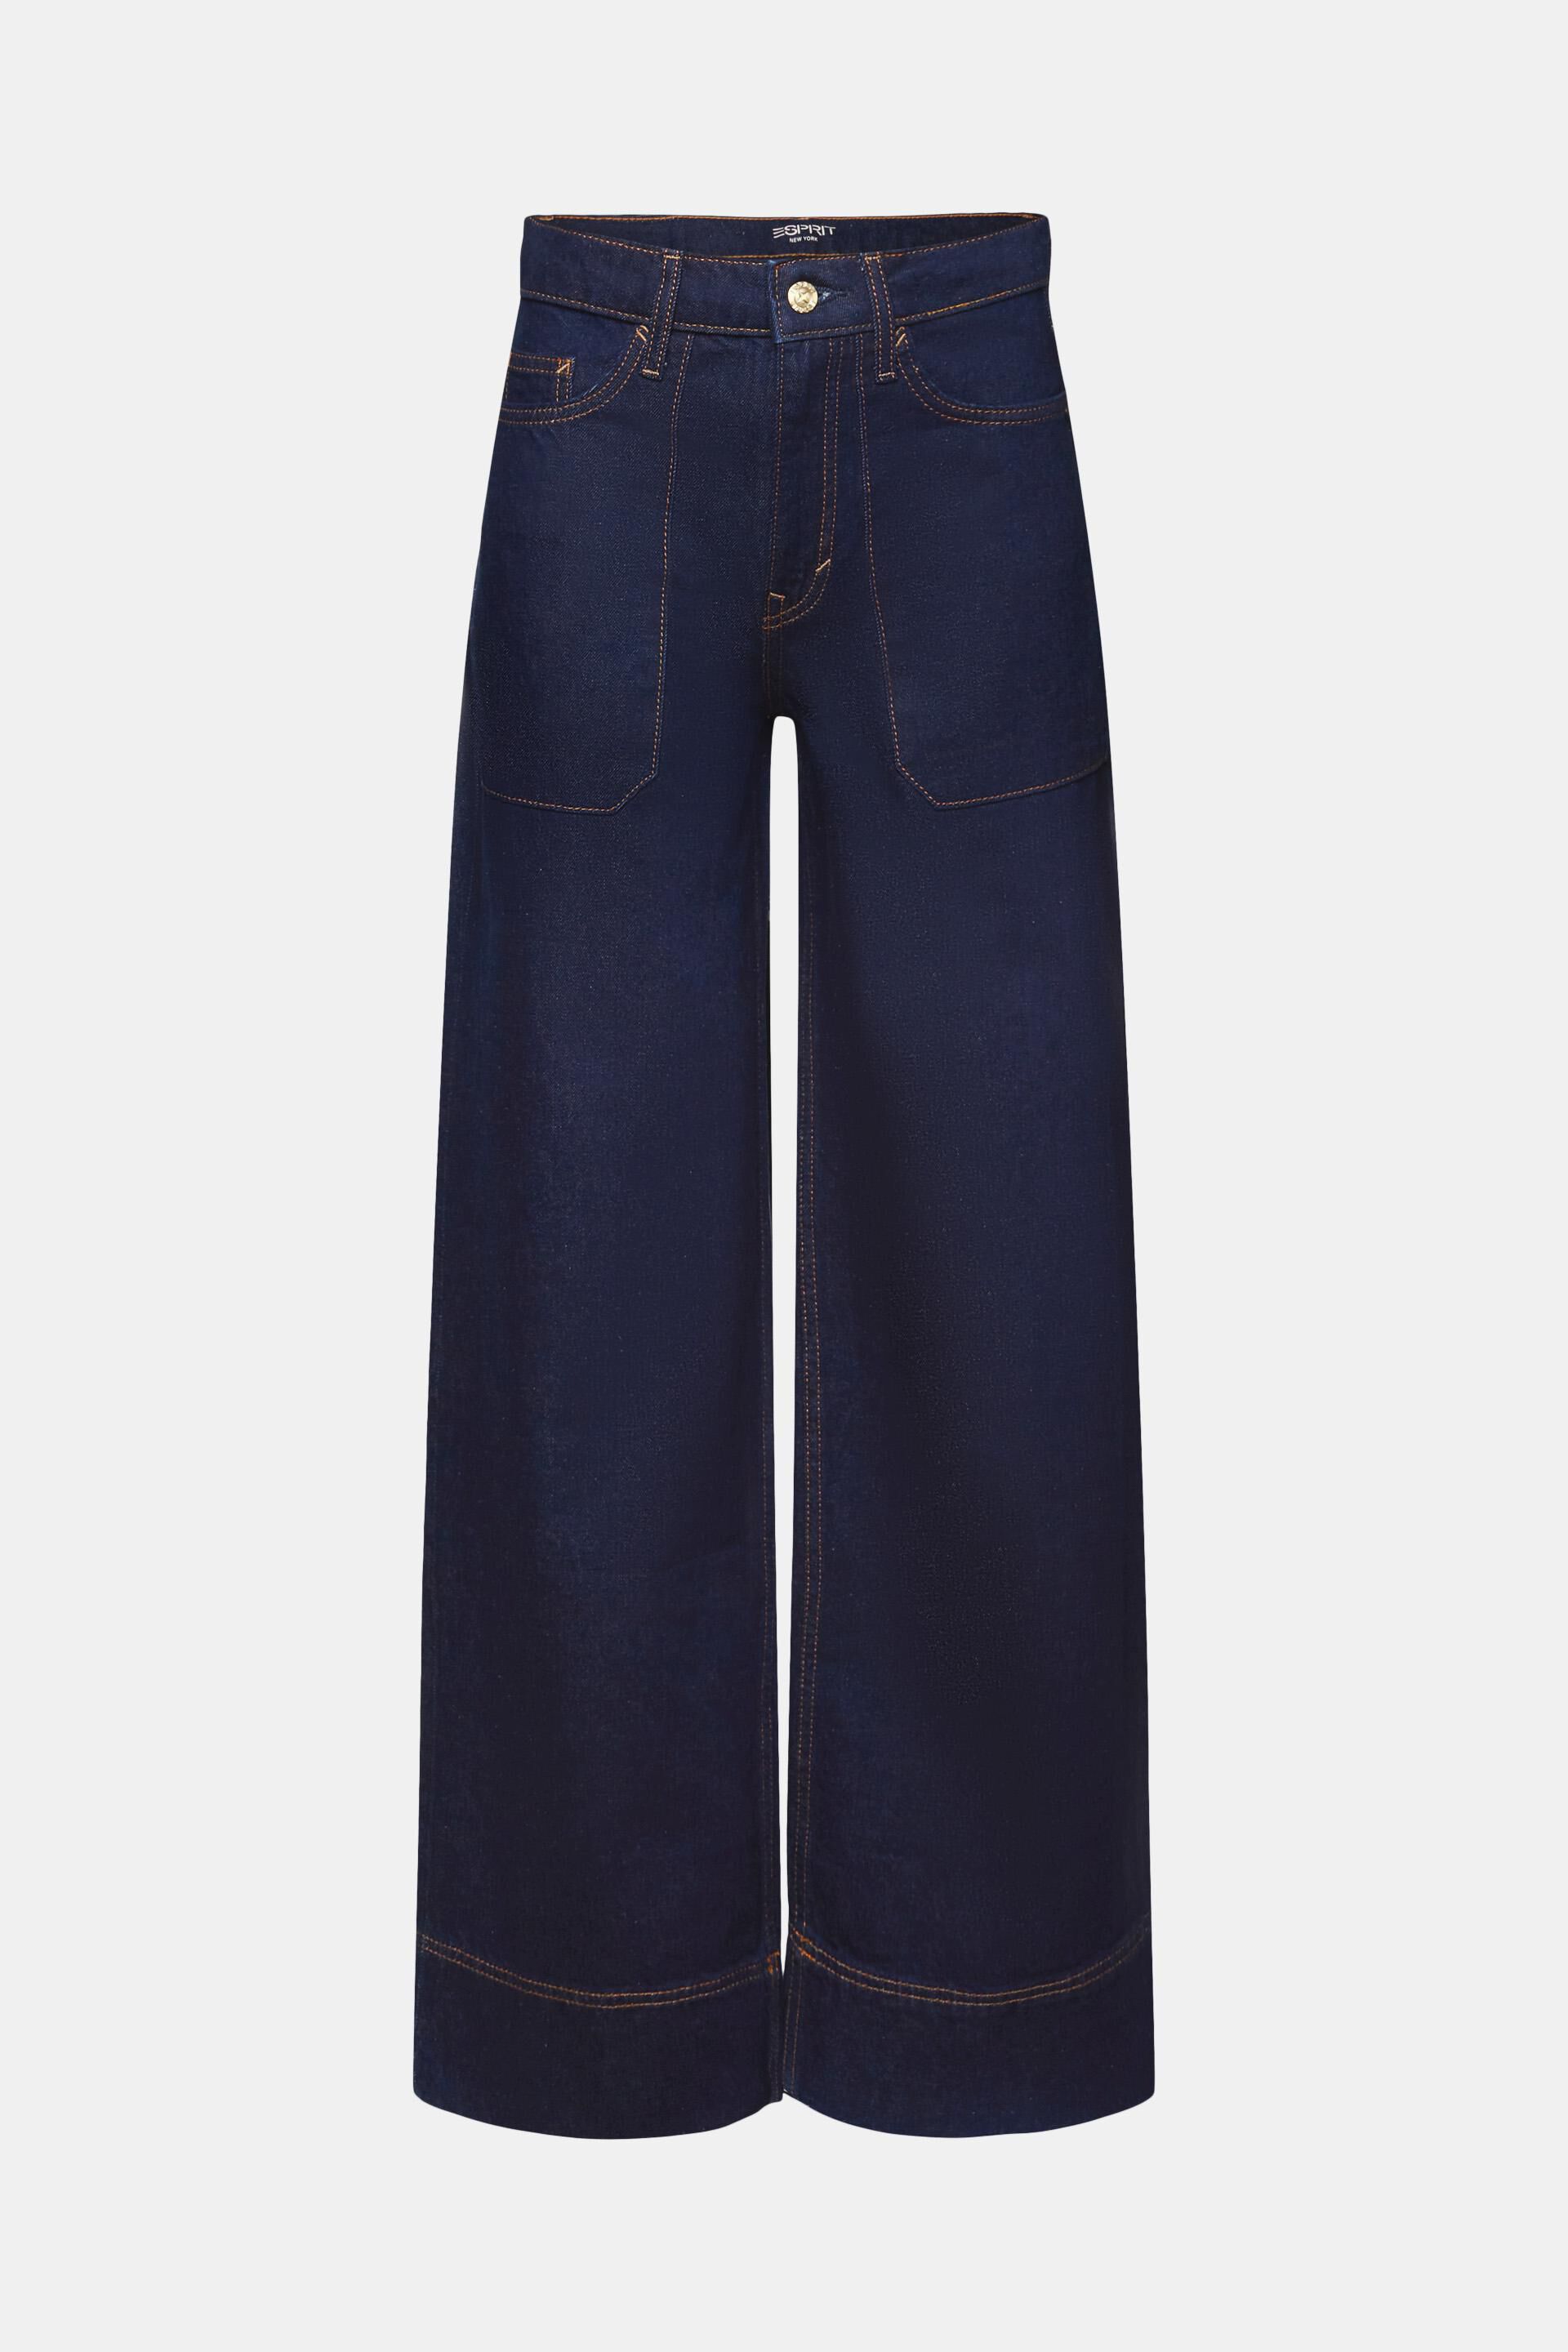 Esprit Damen Retro-Jeans mit weitem Baumwolle 100 % Bein